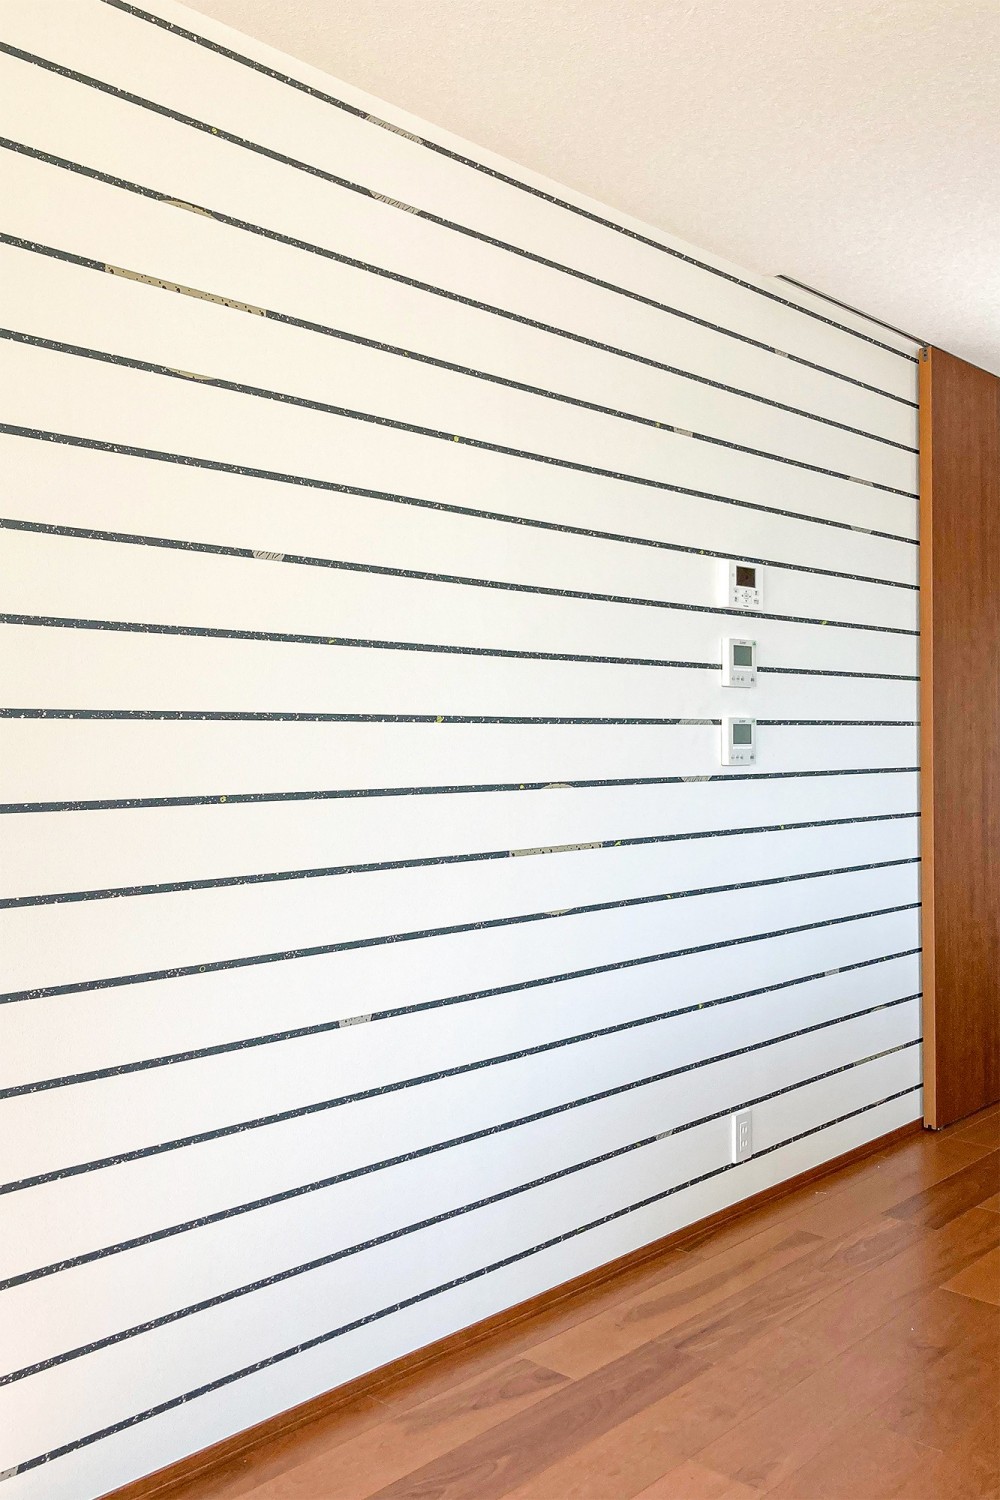 テイストの異なる壁紙を各空間に散りばめる。 (横に伸びるストライプが廊下部分を広く感じさせる)